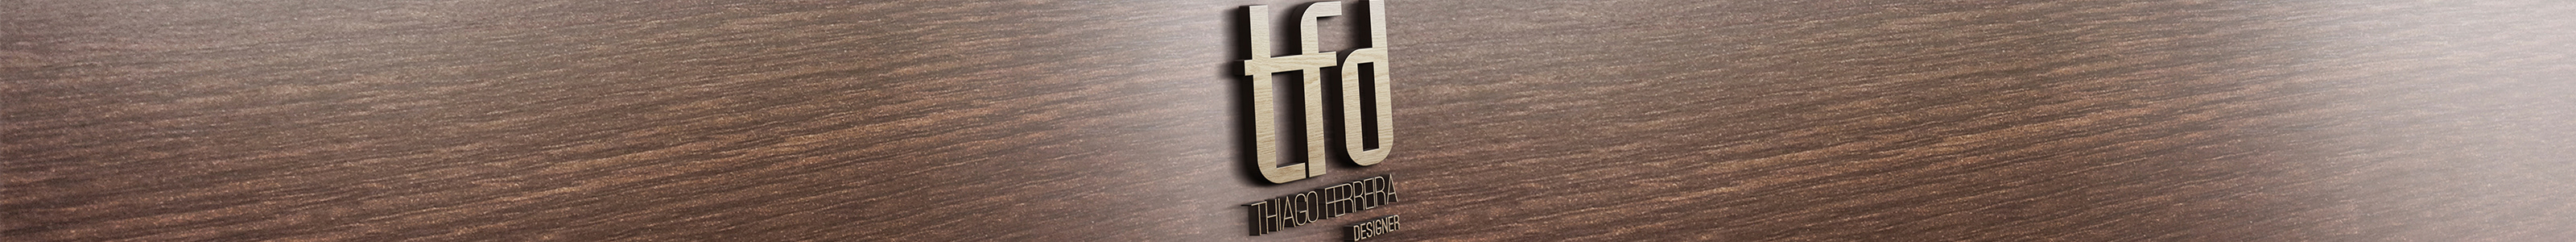 Thiago Ferreira's profile banner